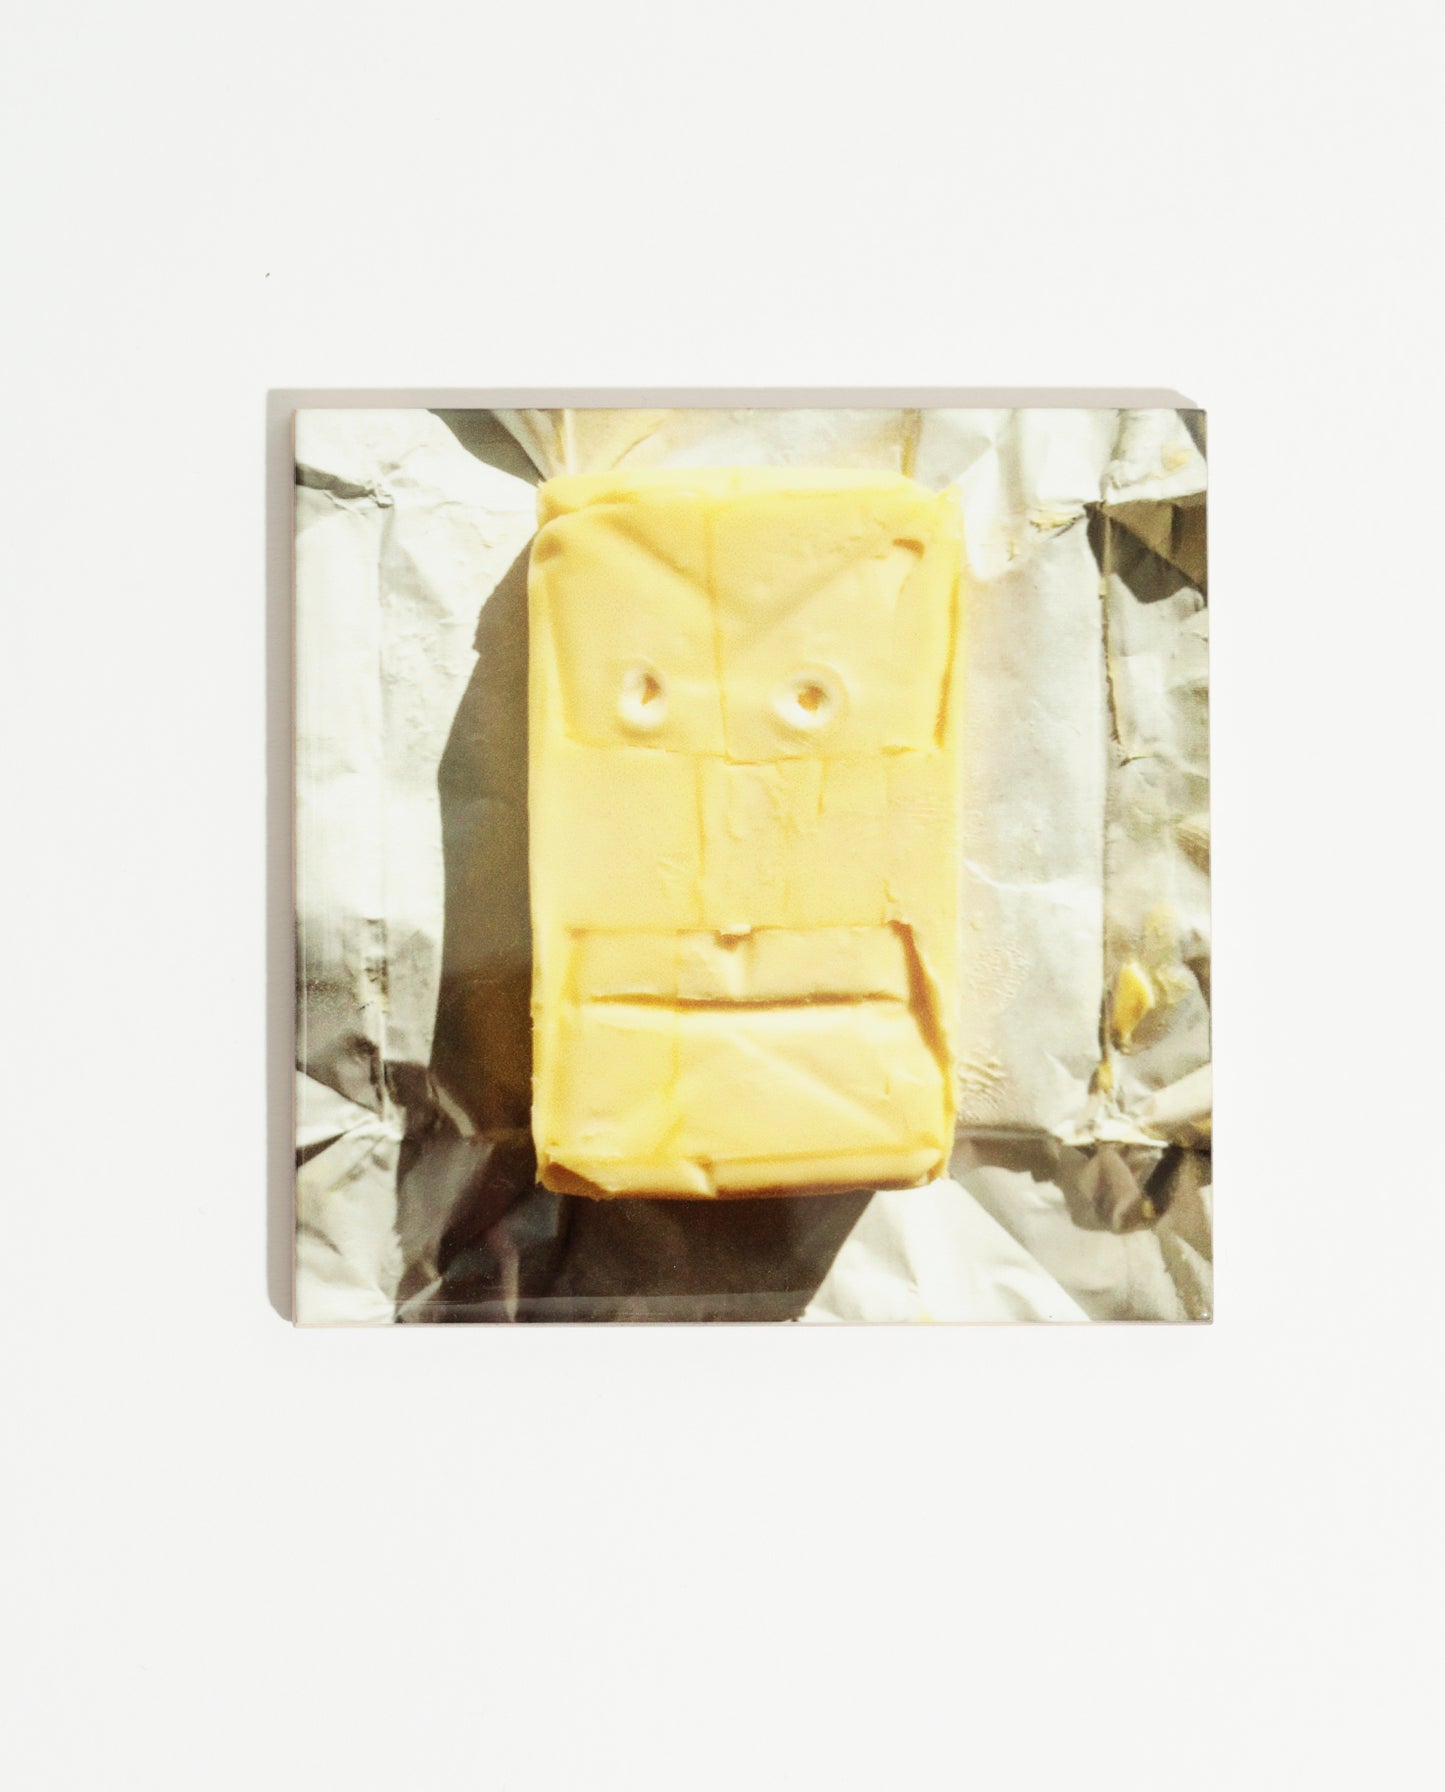 Carreau de faïence imprimée d'une photo de l'artiste Olaf Breuning représentant un visage dans une plaque de beurre. Celui-ci peut être intégré à une faïence de cuisine ou accroché dans la maison.